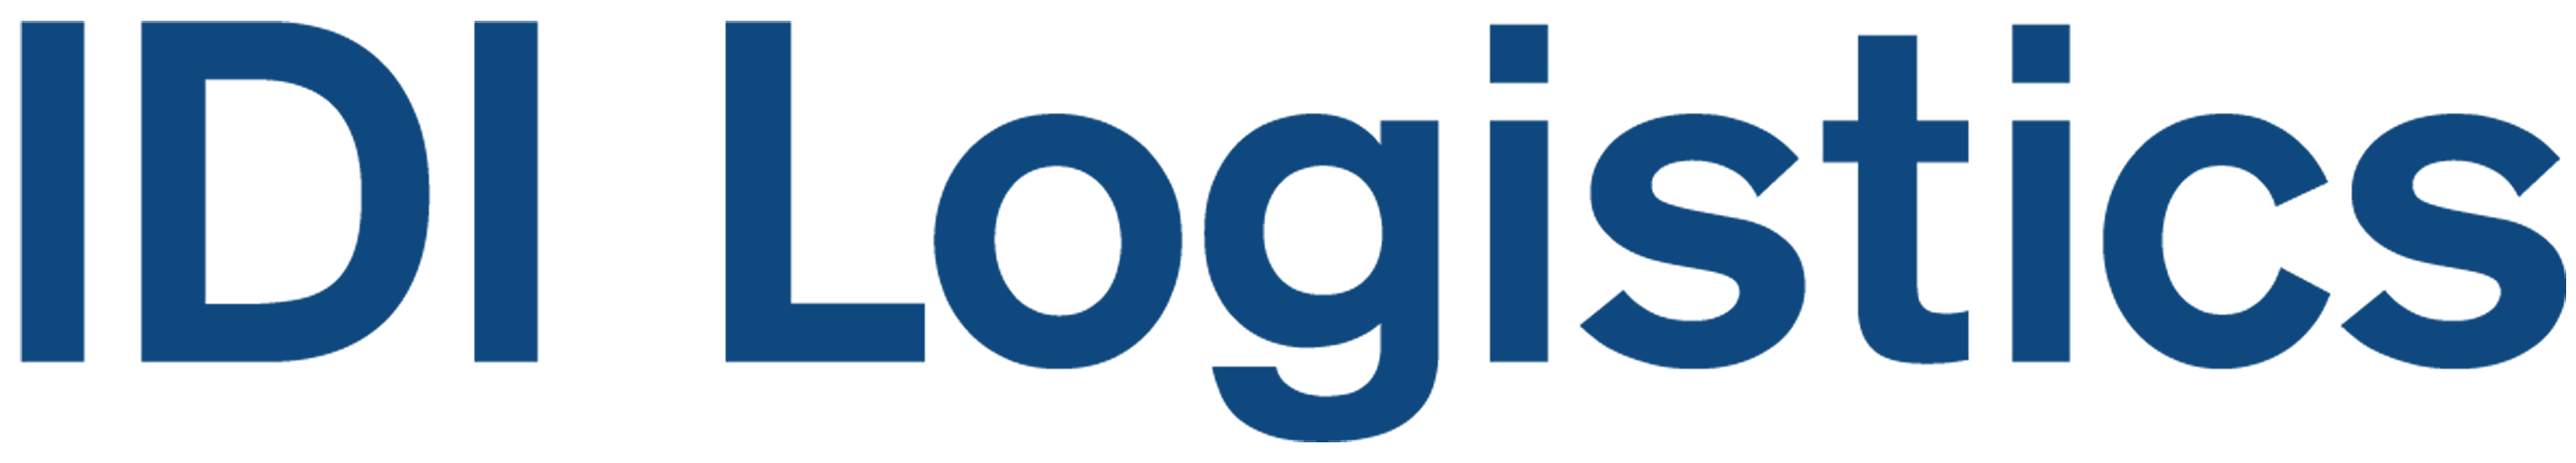 IDI-Logistics-Logo-1.png